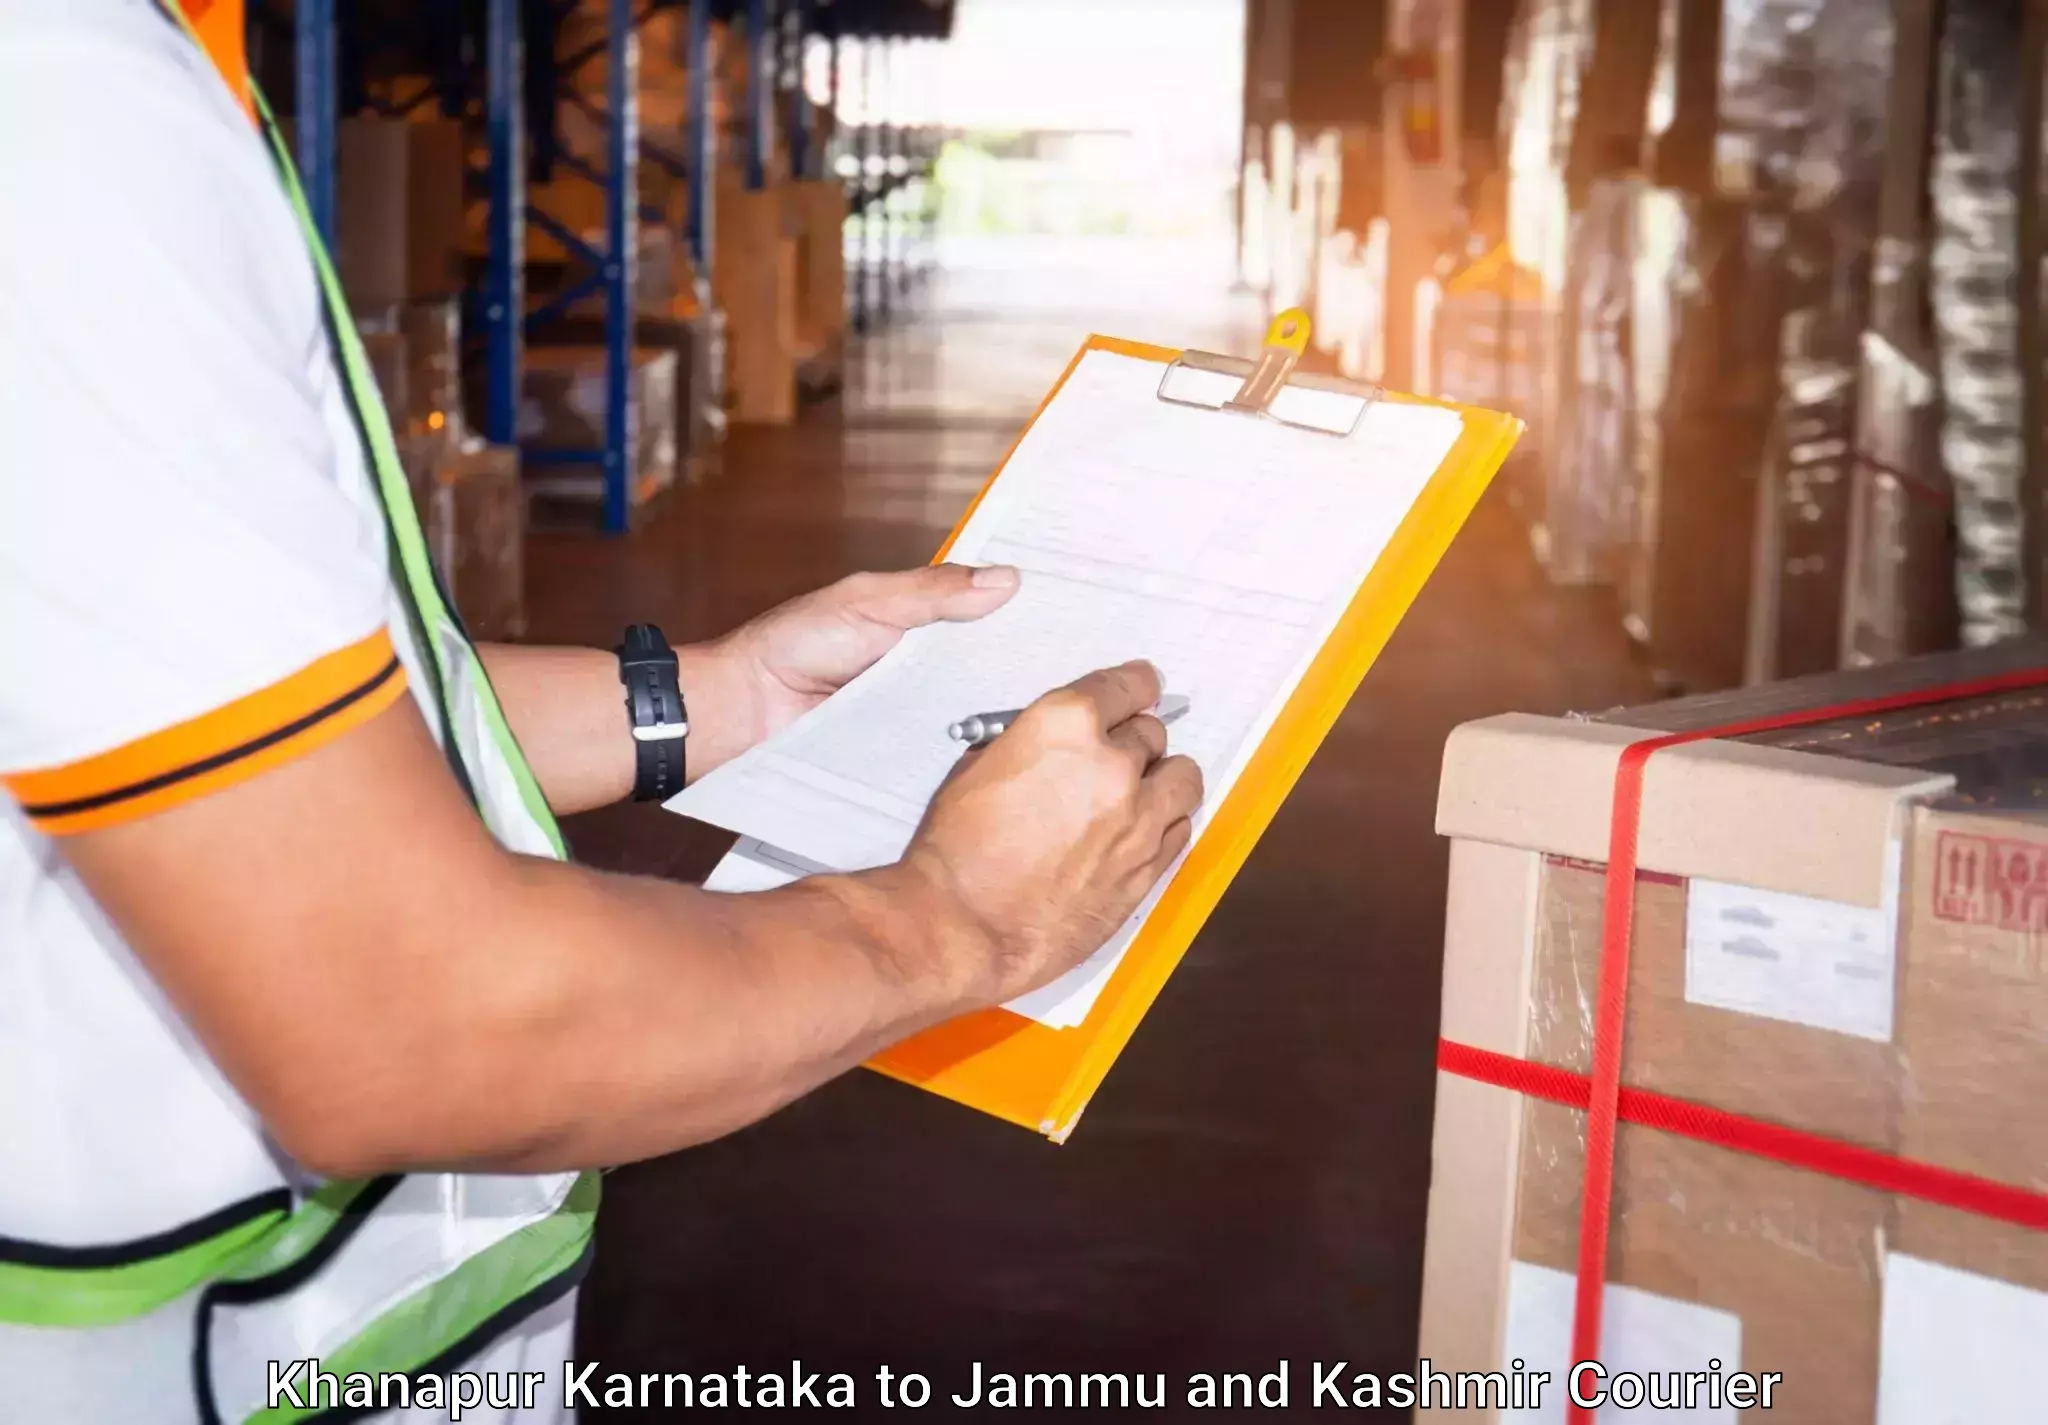 Baggage shipping service Khanapur Karnataka to Sunderbani